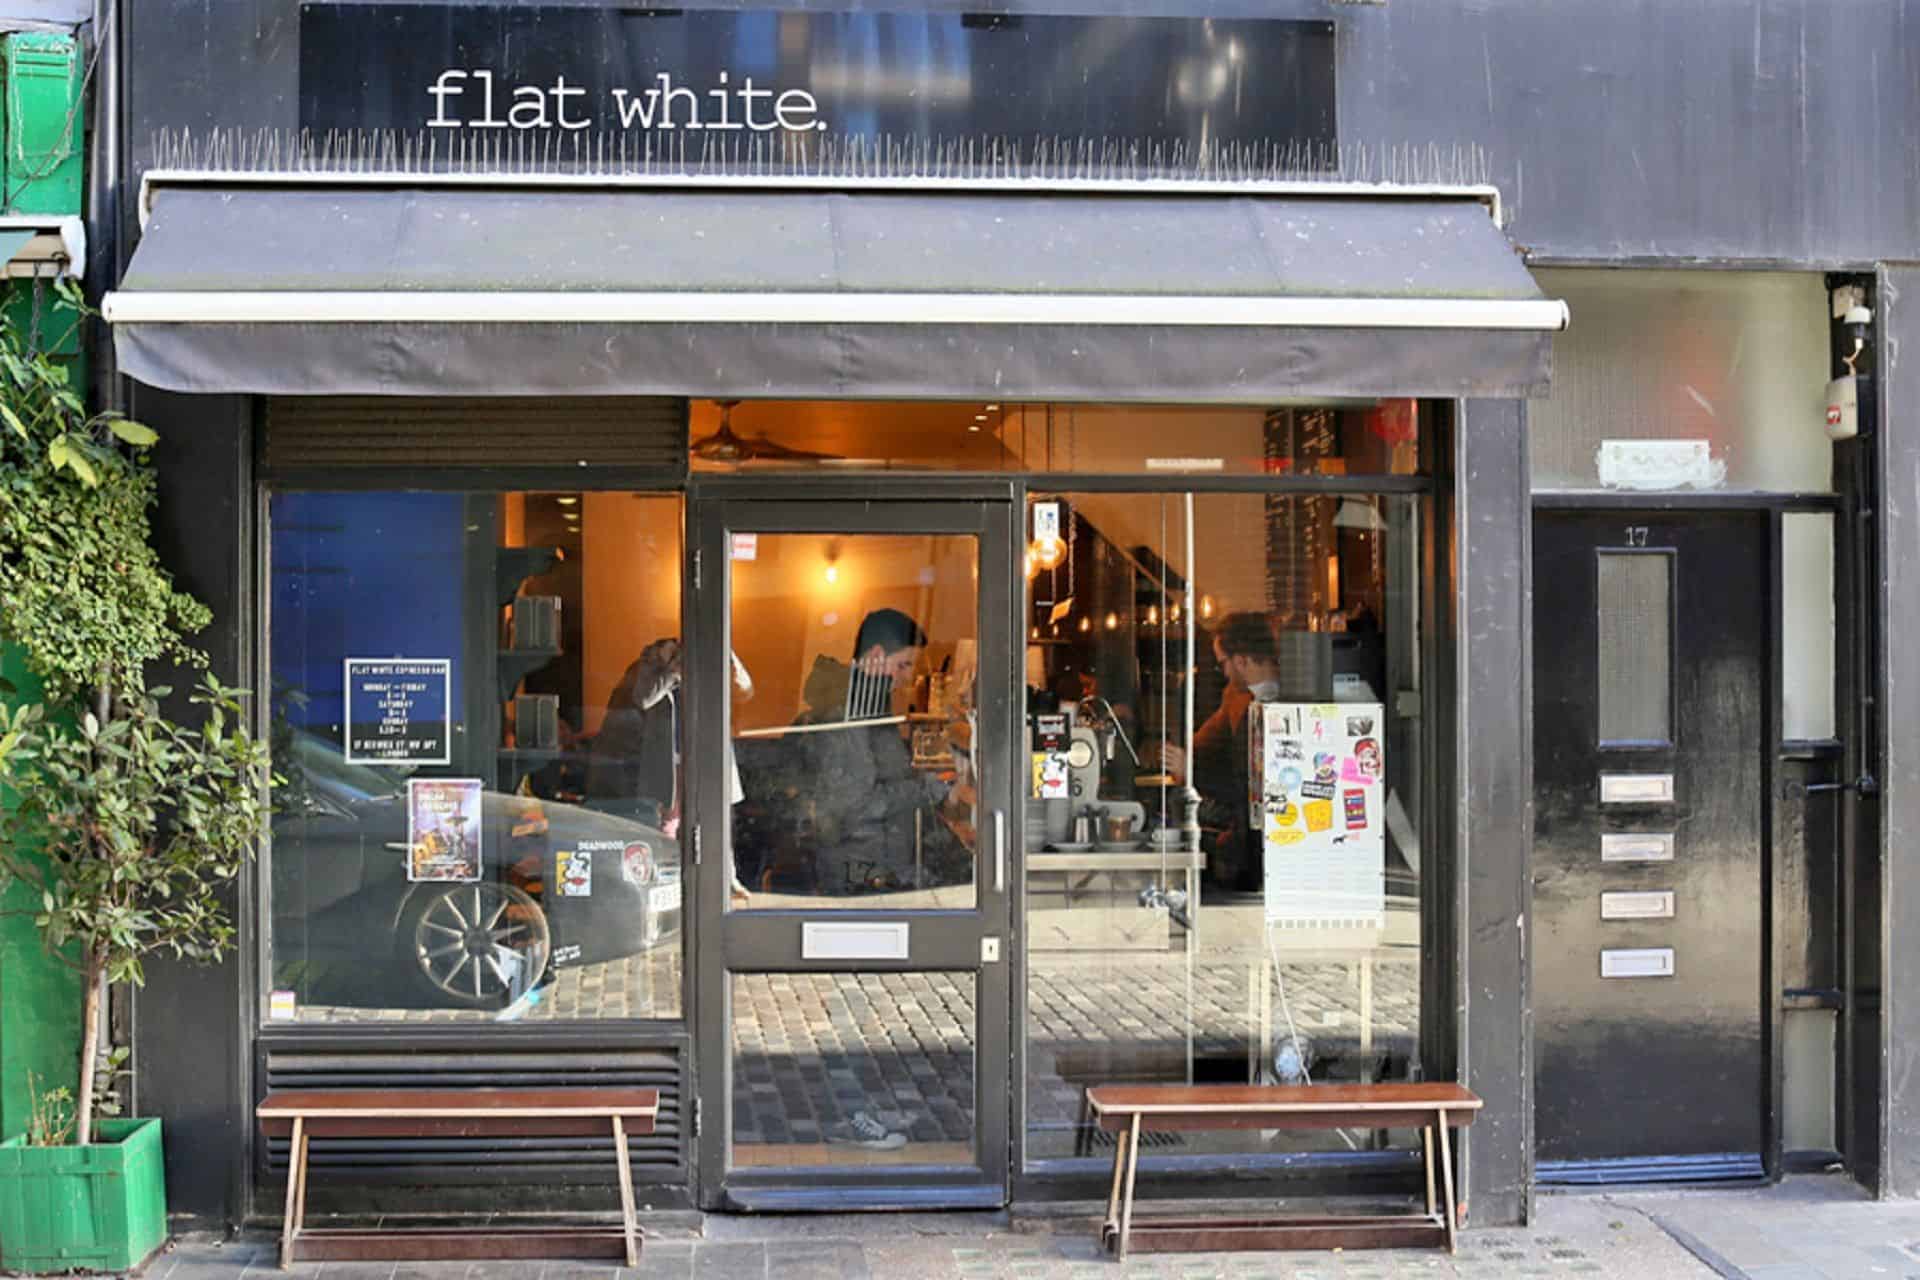 Flat White in UK